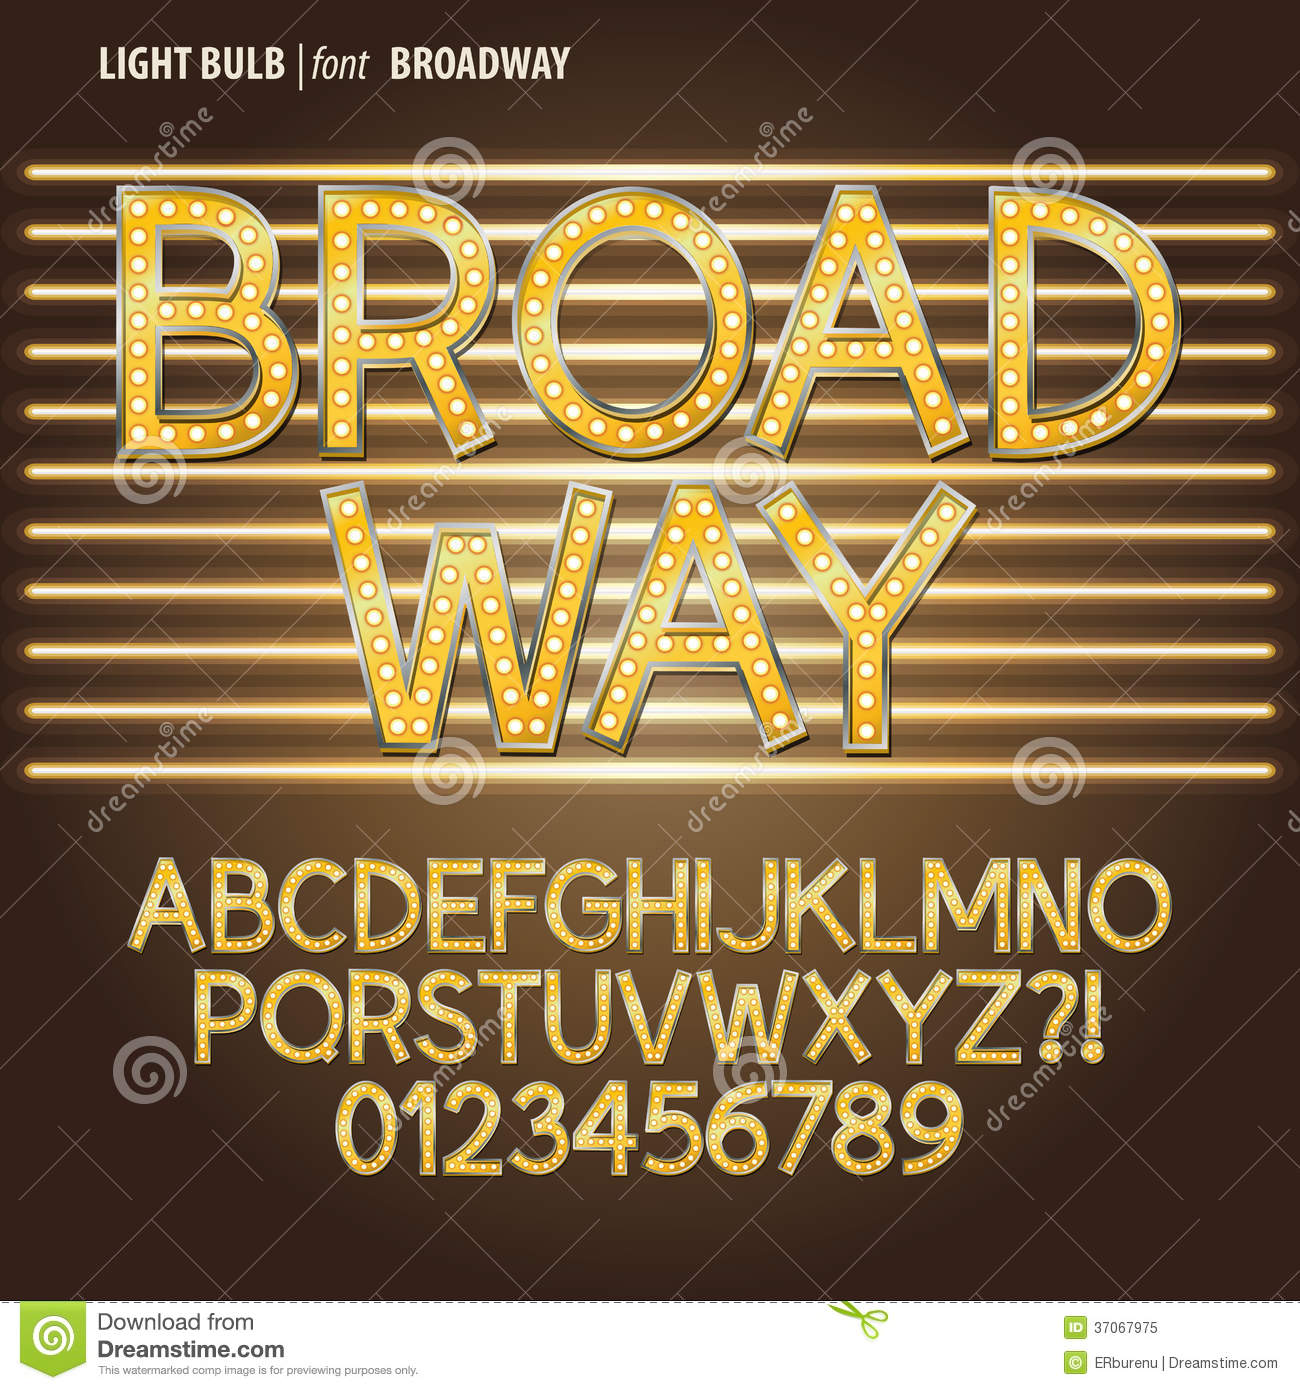 Broadway Light Bulb Font